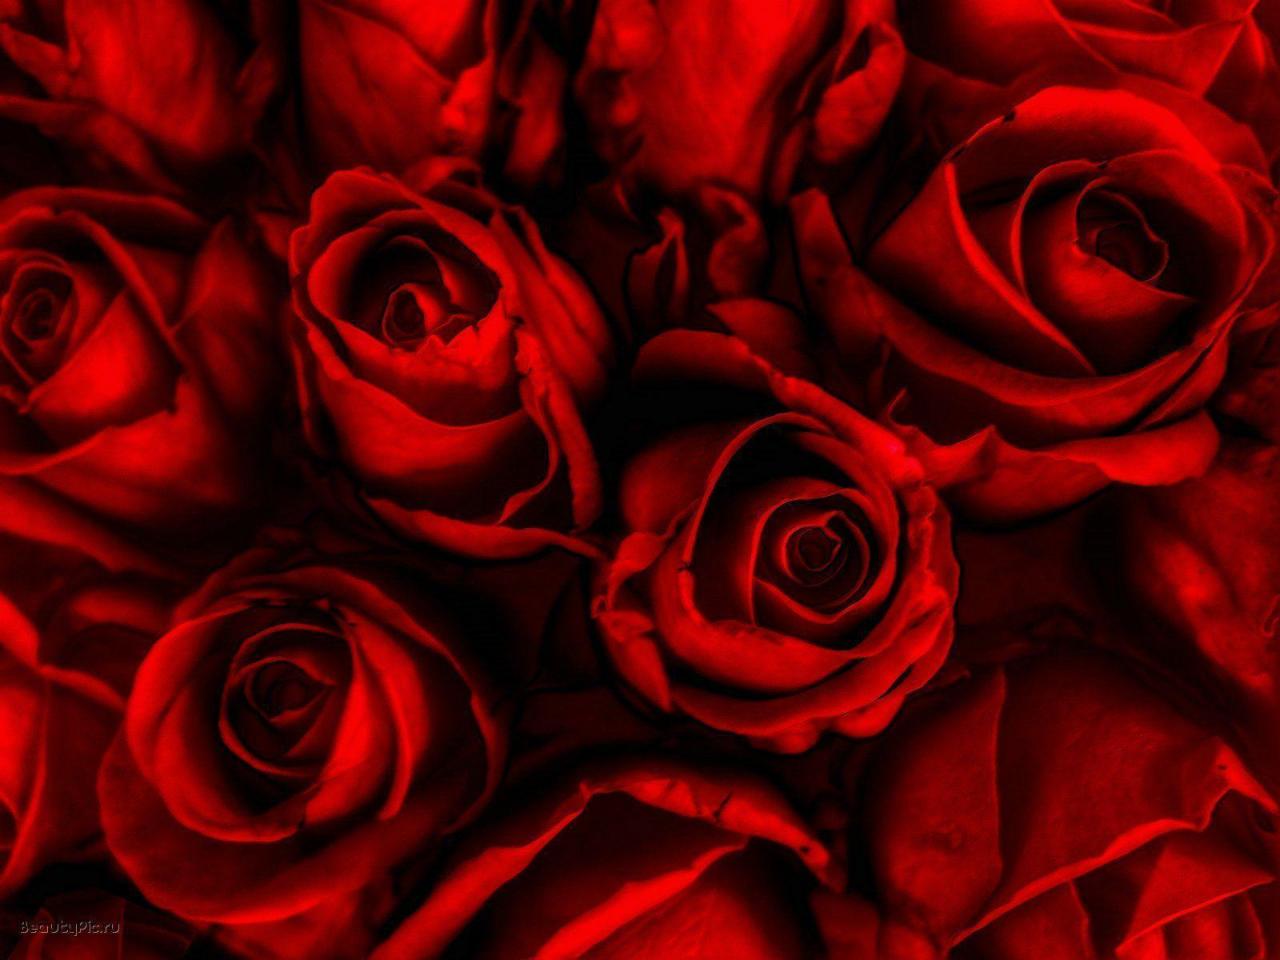 خلفيات ورود حمراء , اروع صور لازهار وورد حمراء اللون كلام حب